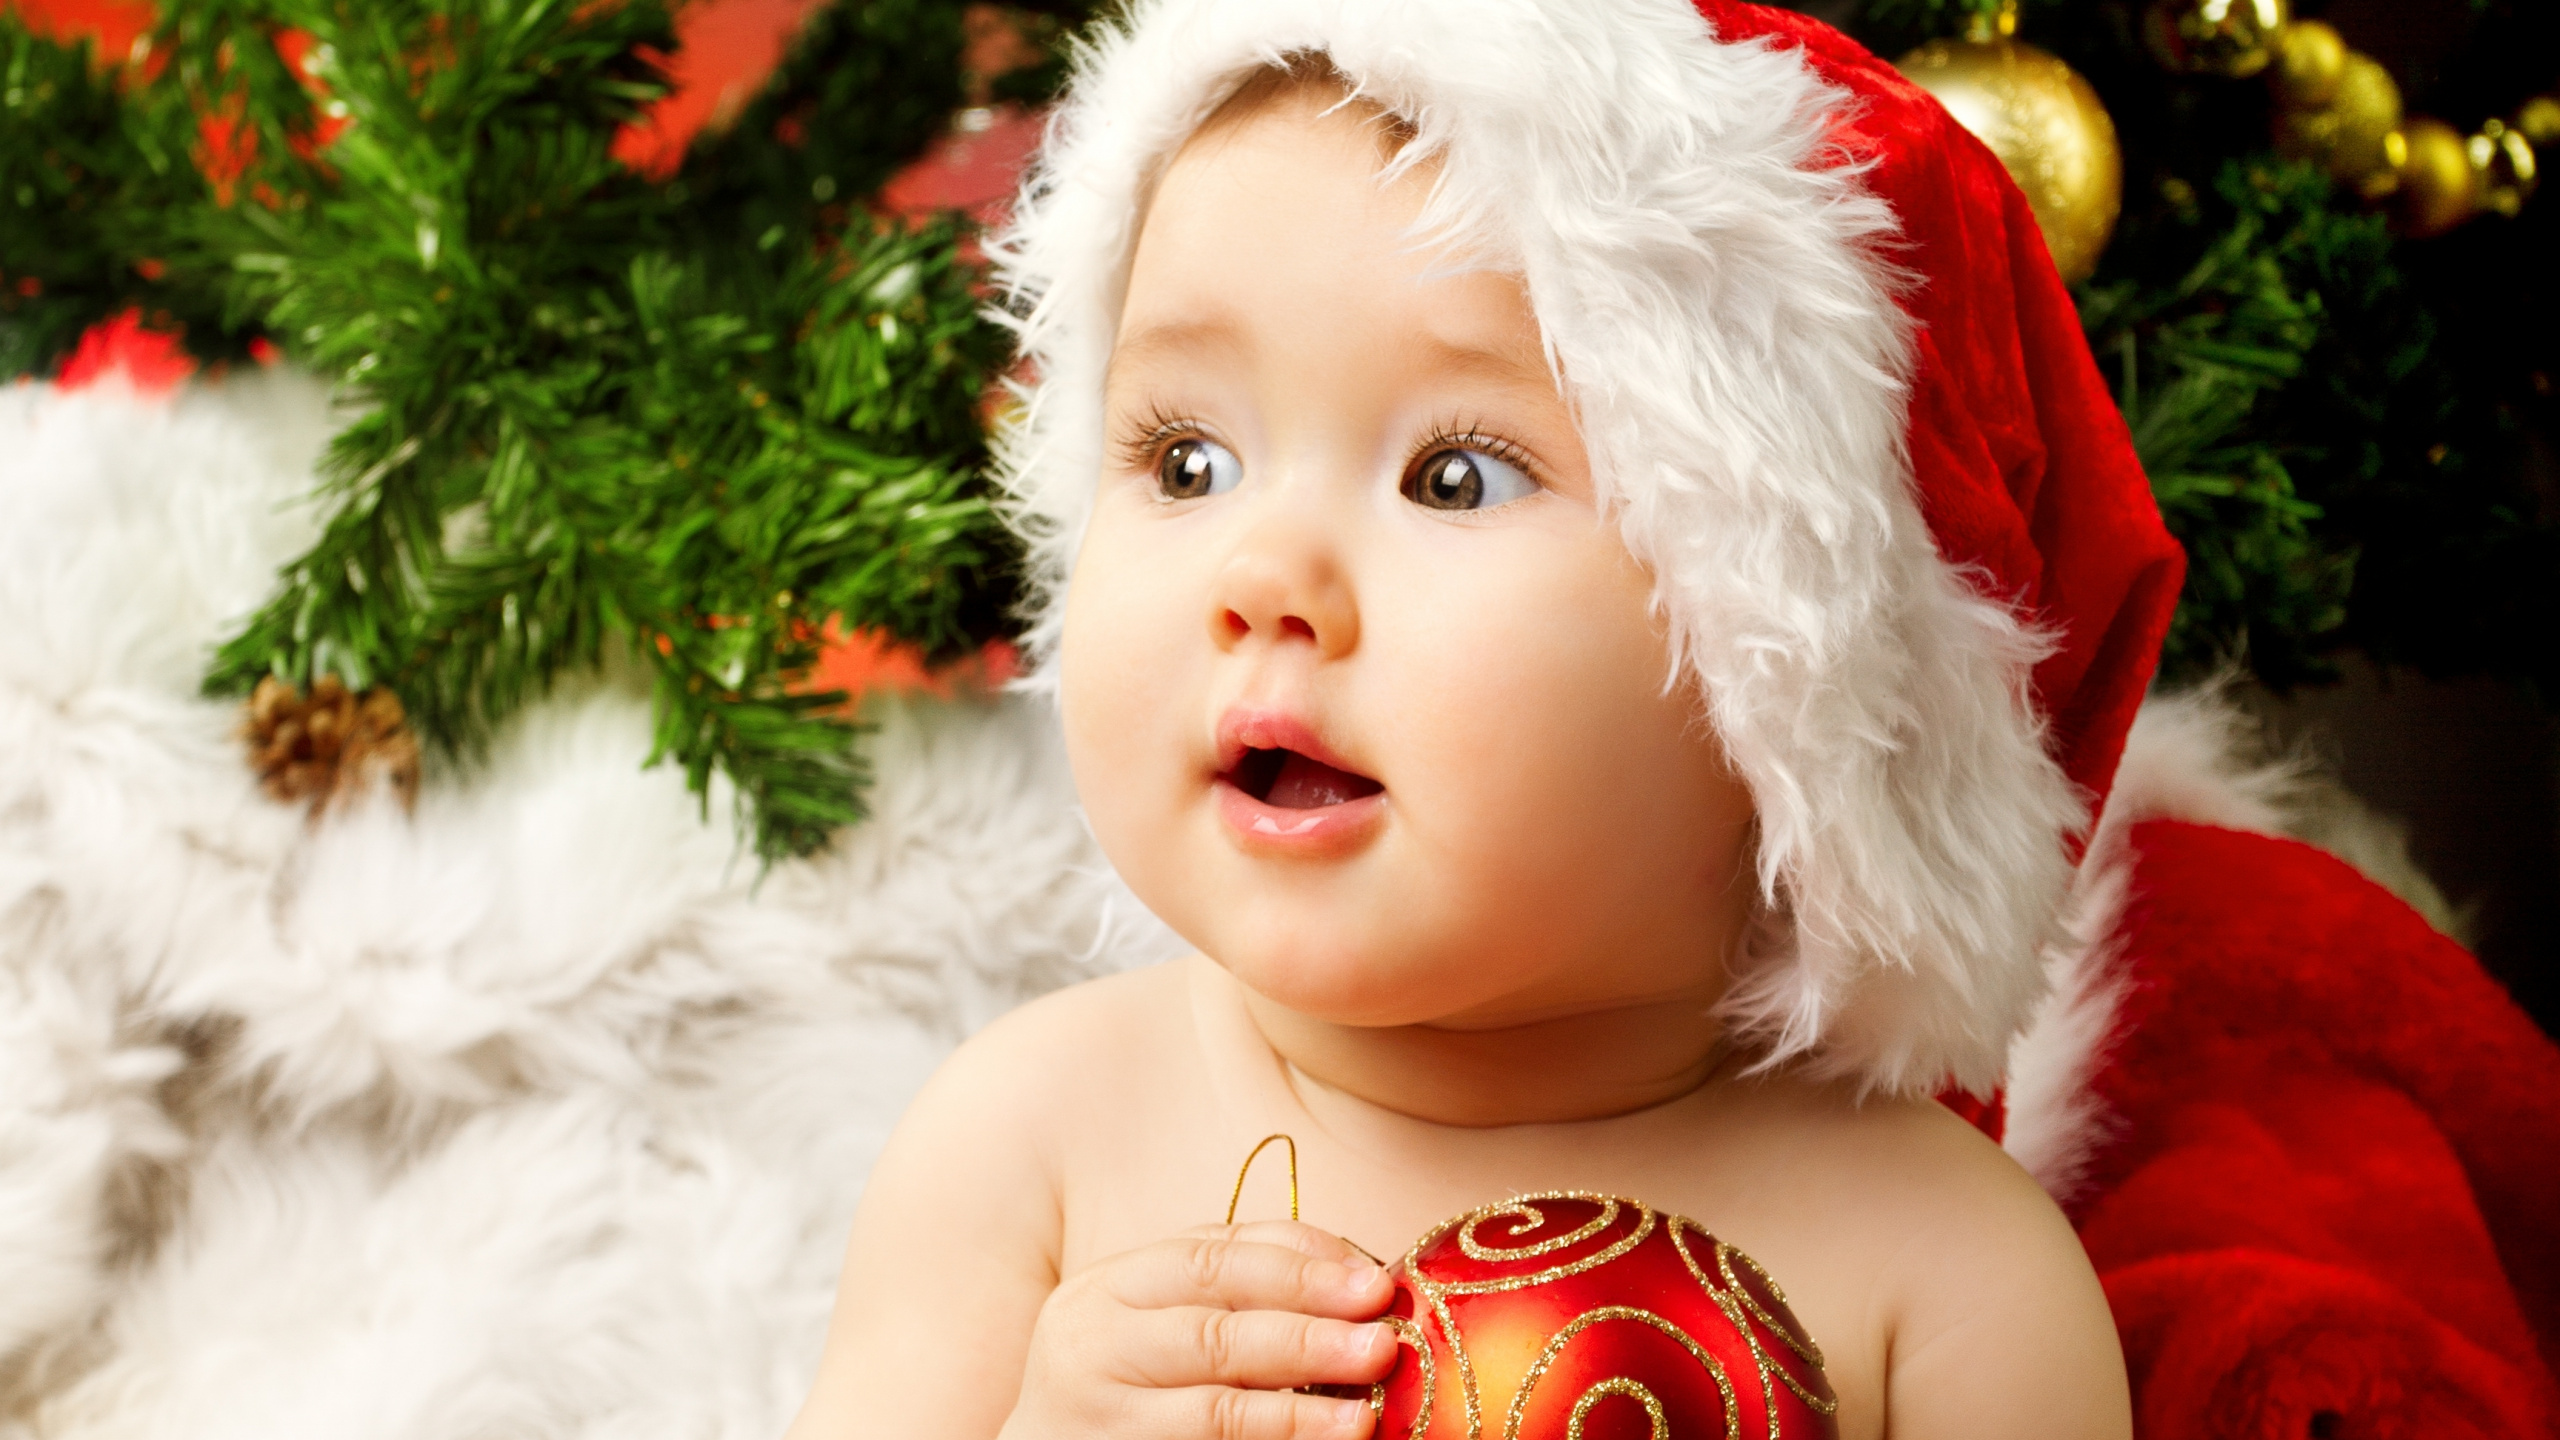 El Día De Navidad, Bebé, la Lindura, Navidad, Adorno de Navidad. Wallpaper in 2560x1440 Resolution